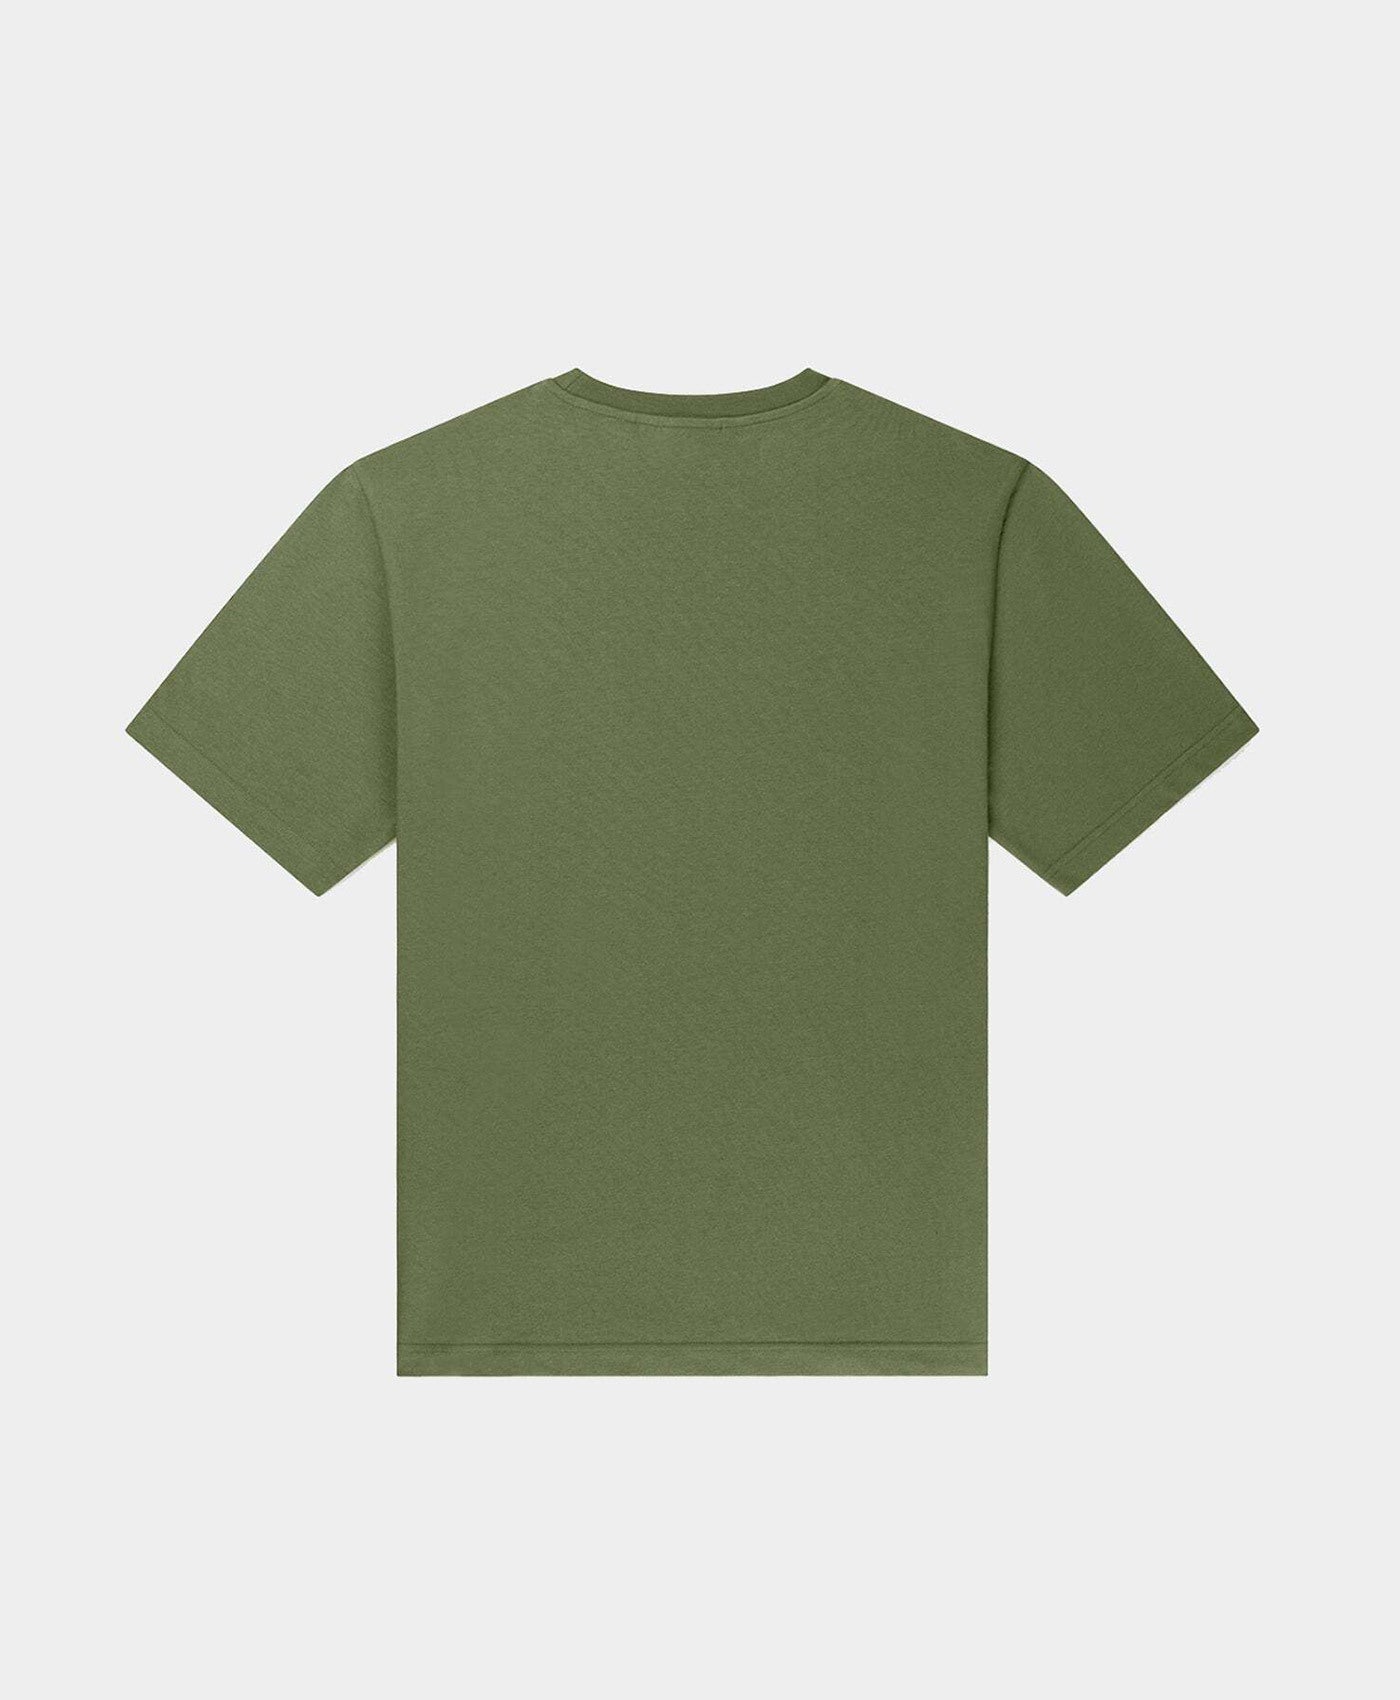 DP - Clover Green Circle T-Shirt - Packshot - Rear